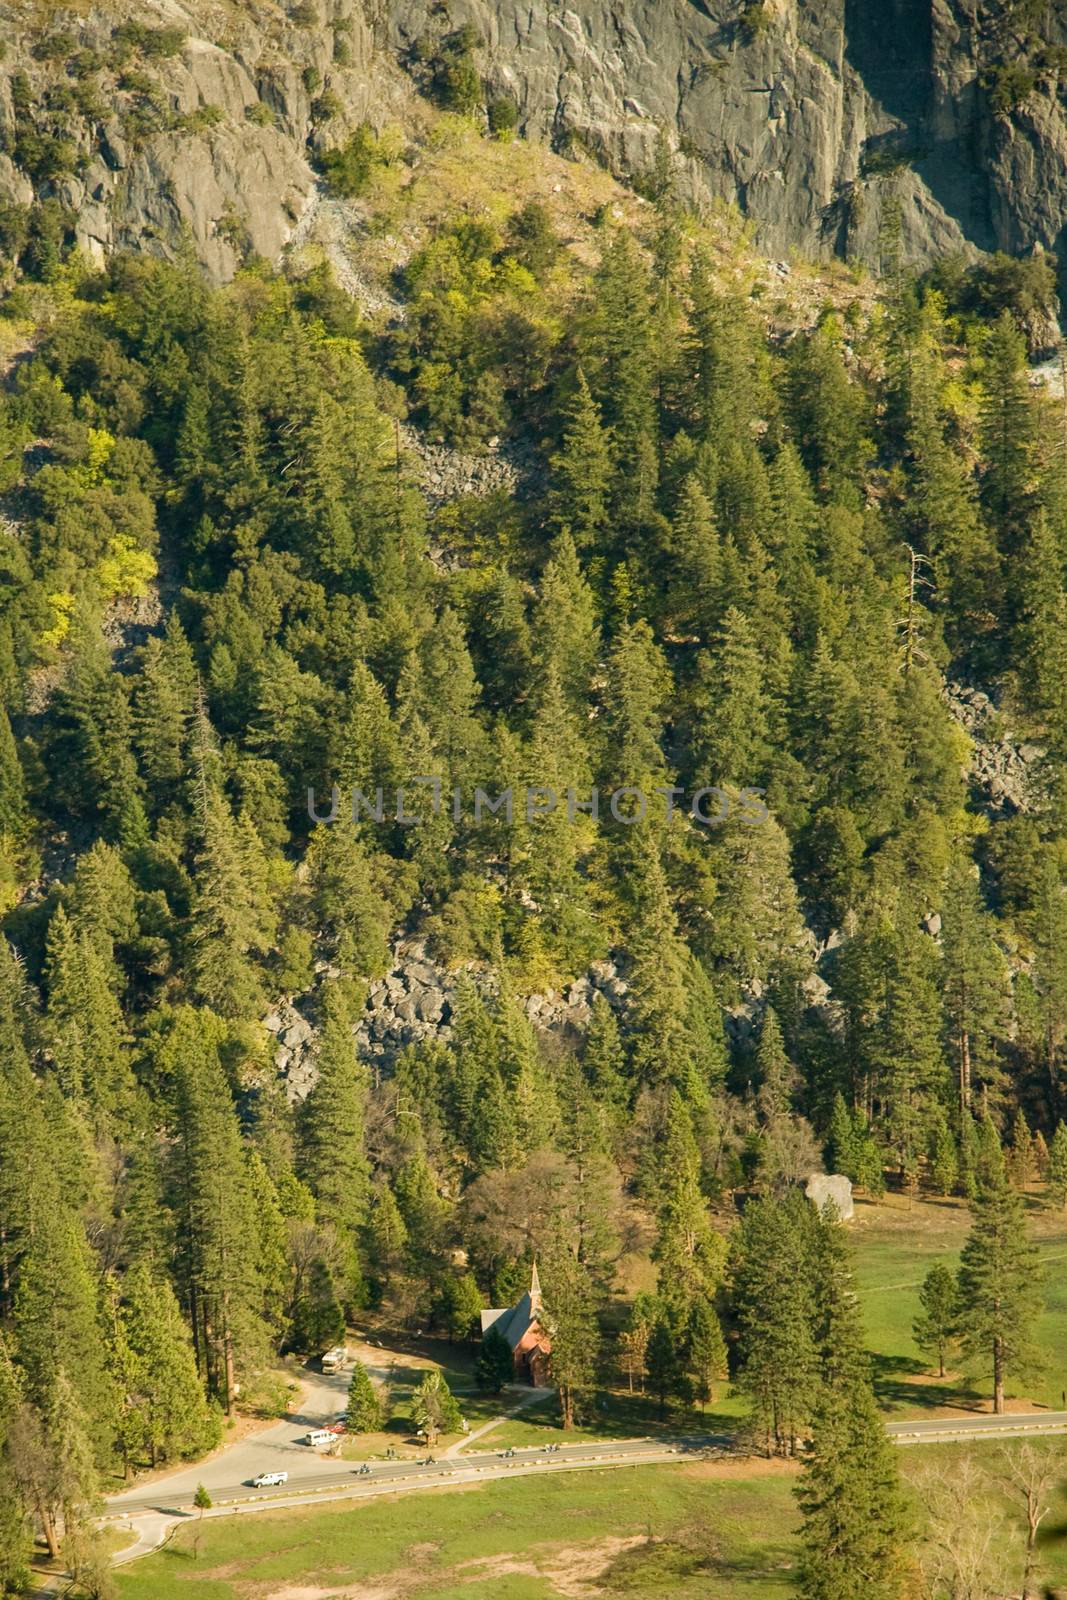 Yosemite Valley by CelsoDiniz